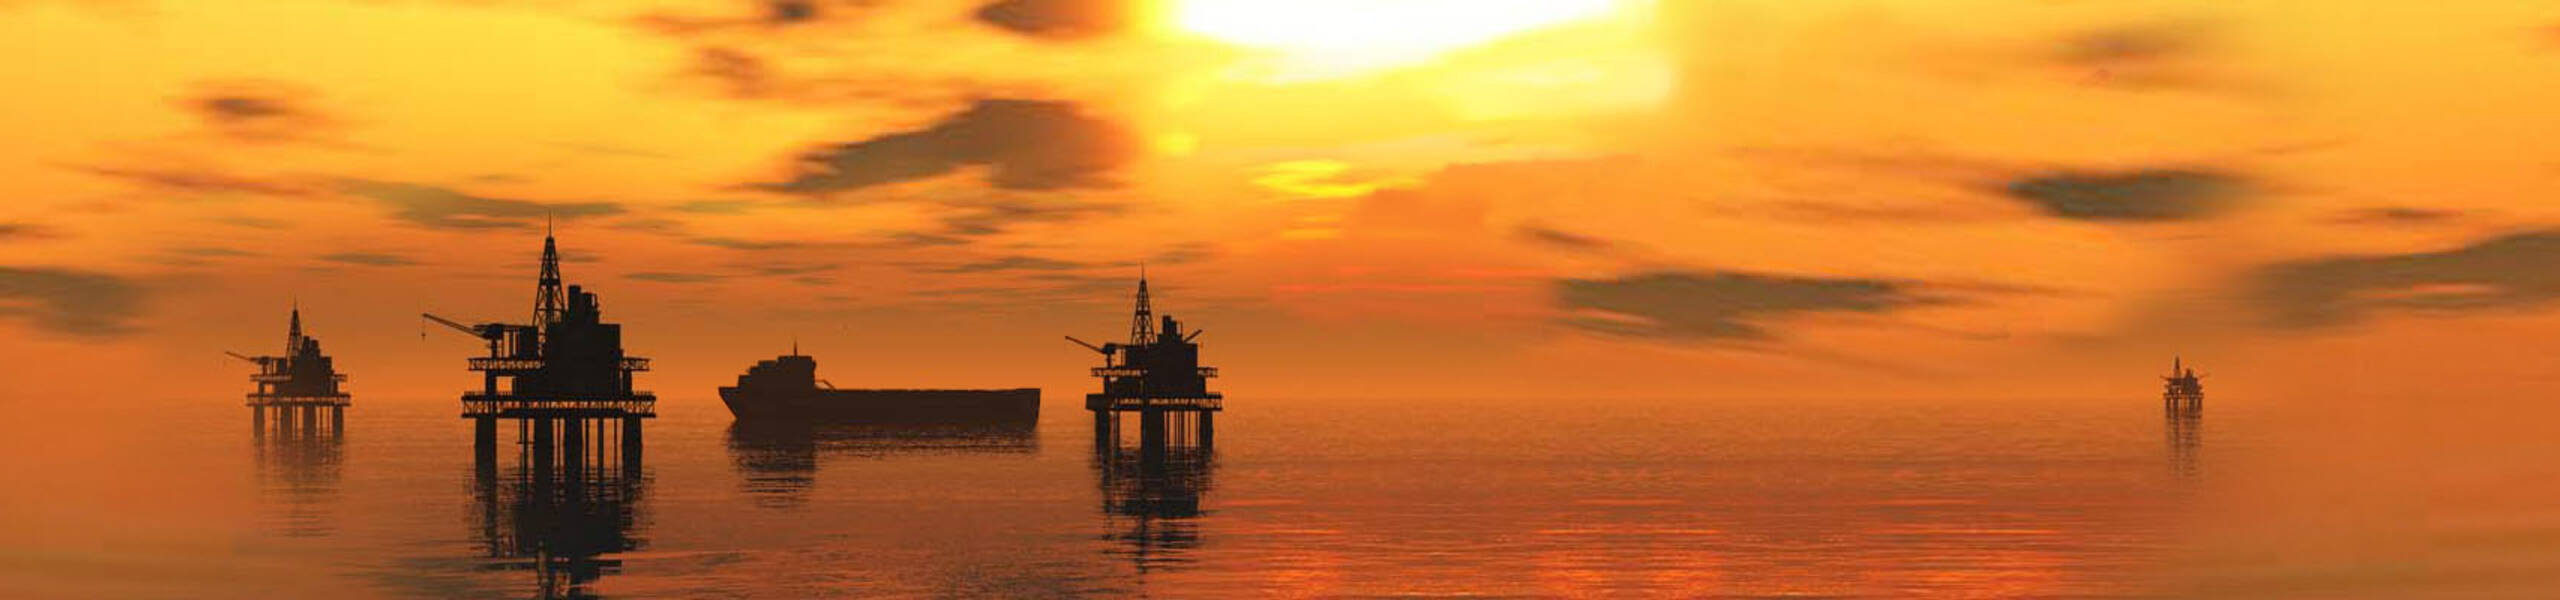 Relatórios: API vê enorme acumulação de petróleo